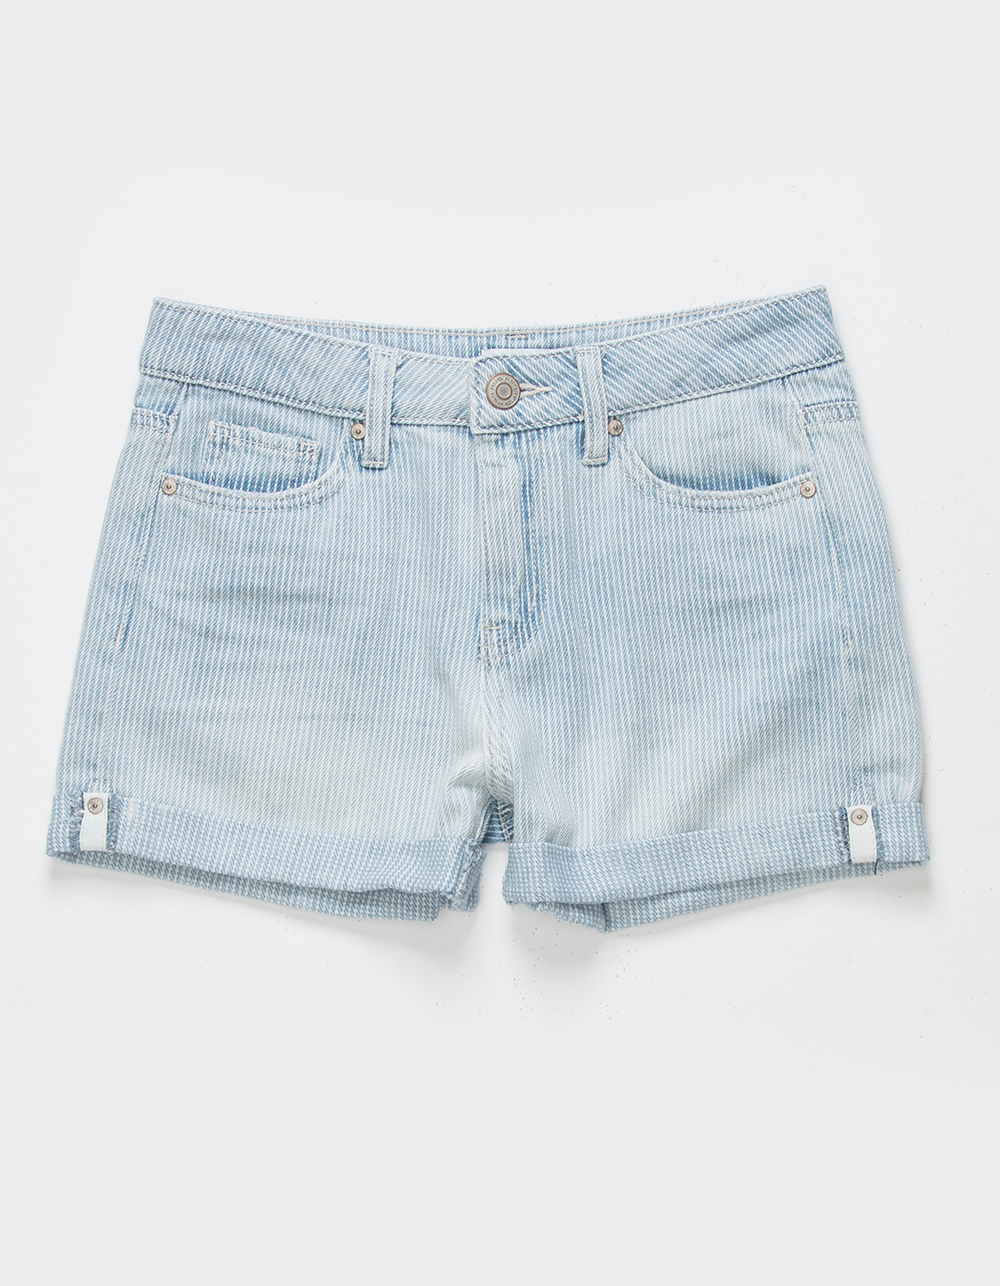 Girls' Shorts: Cute Denim Shorts & More